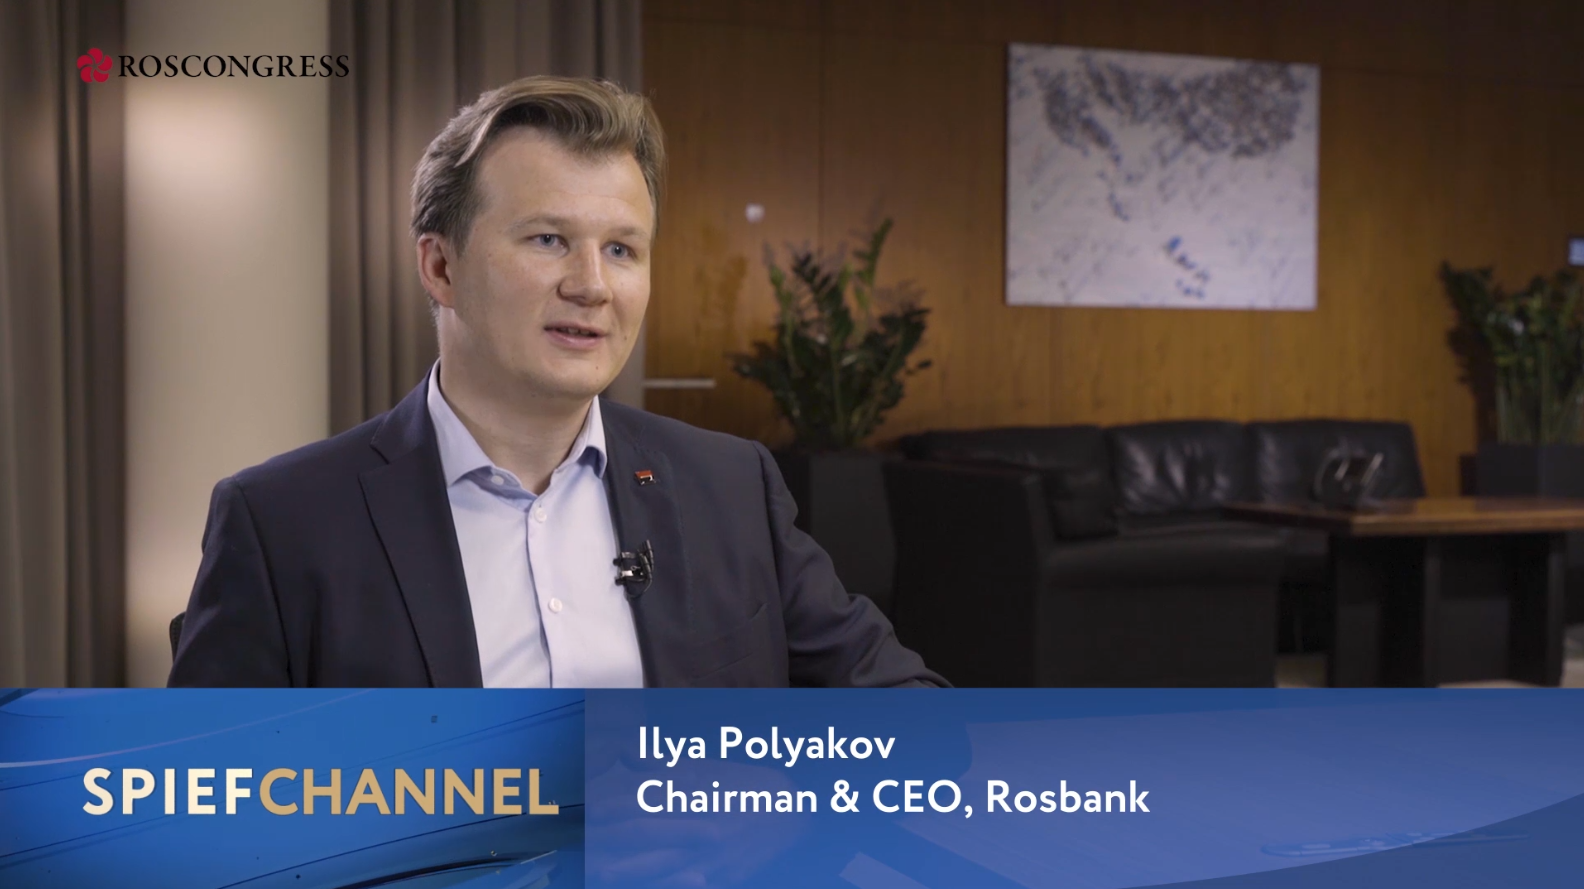 Ilya Polyakov, Chairman & CEO, Rosbank